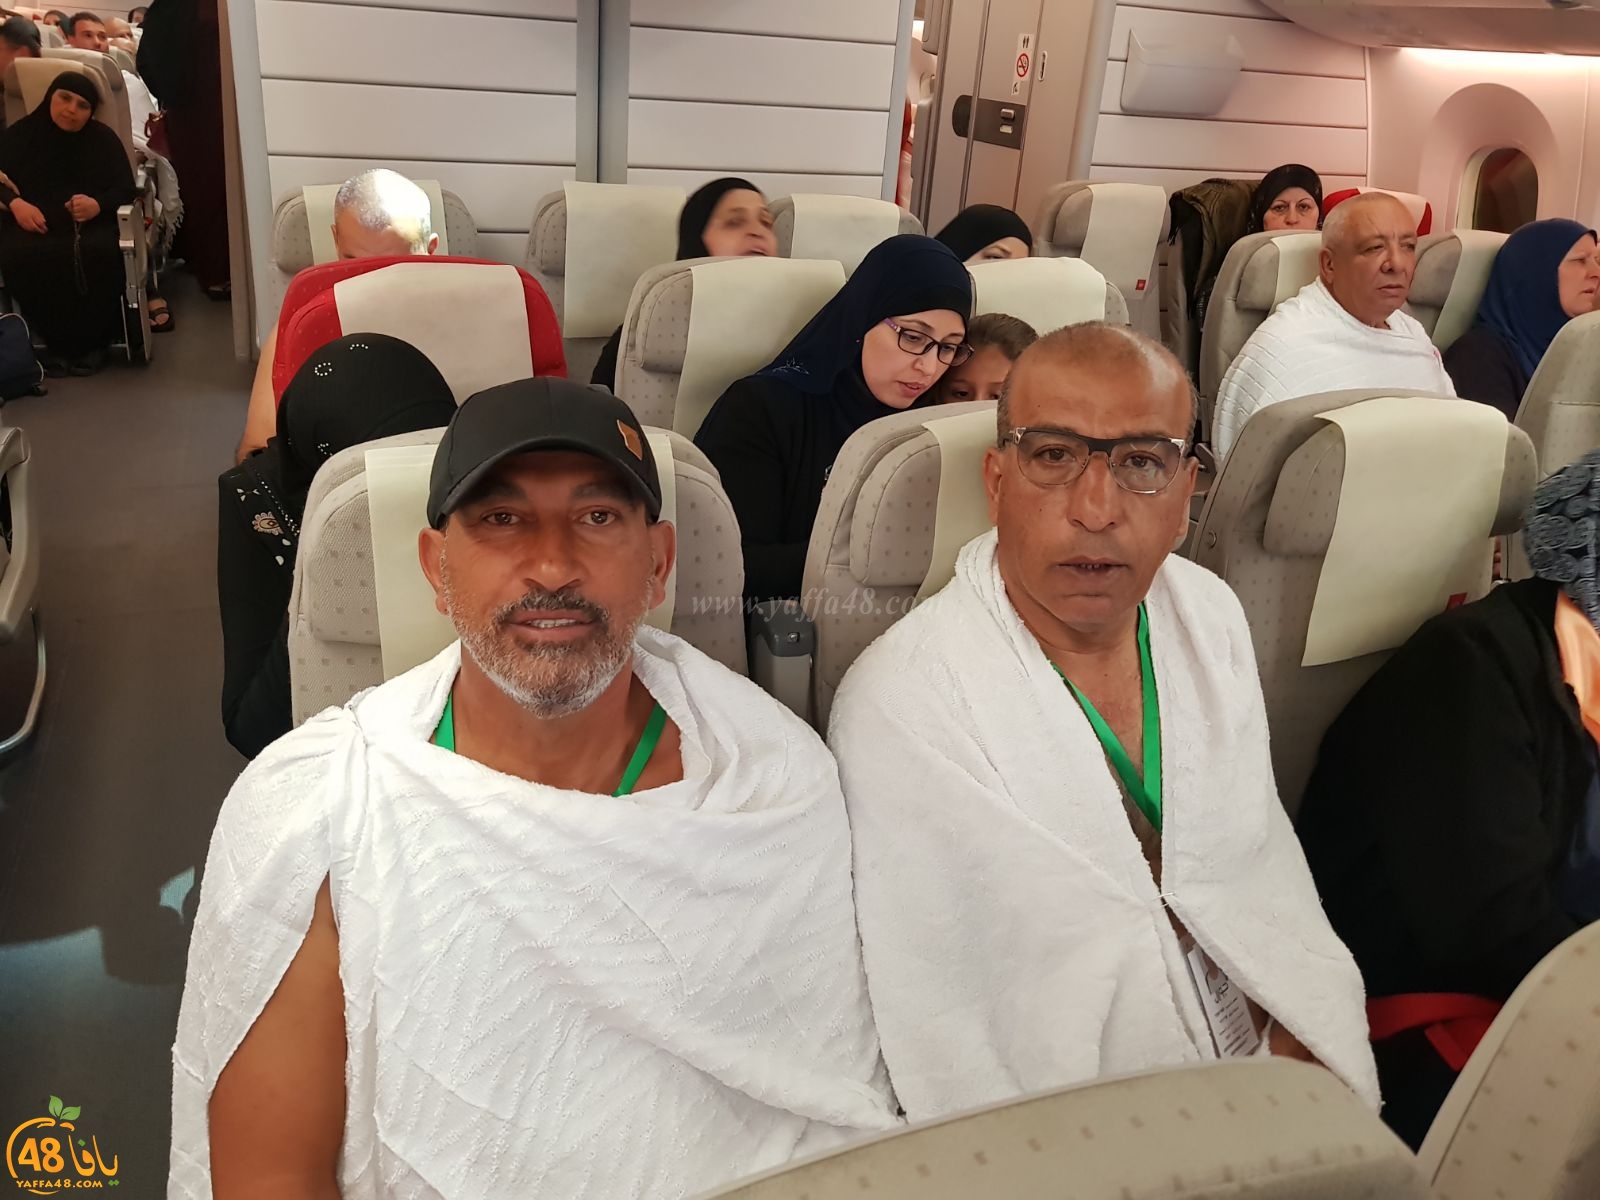  بالصور: لأول مرة - معتمرو يافا يُحرمون من مطار اللد 